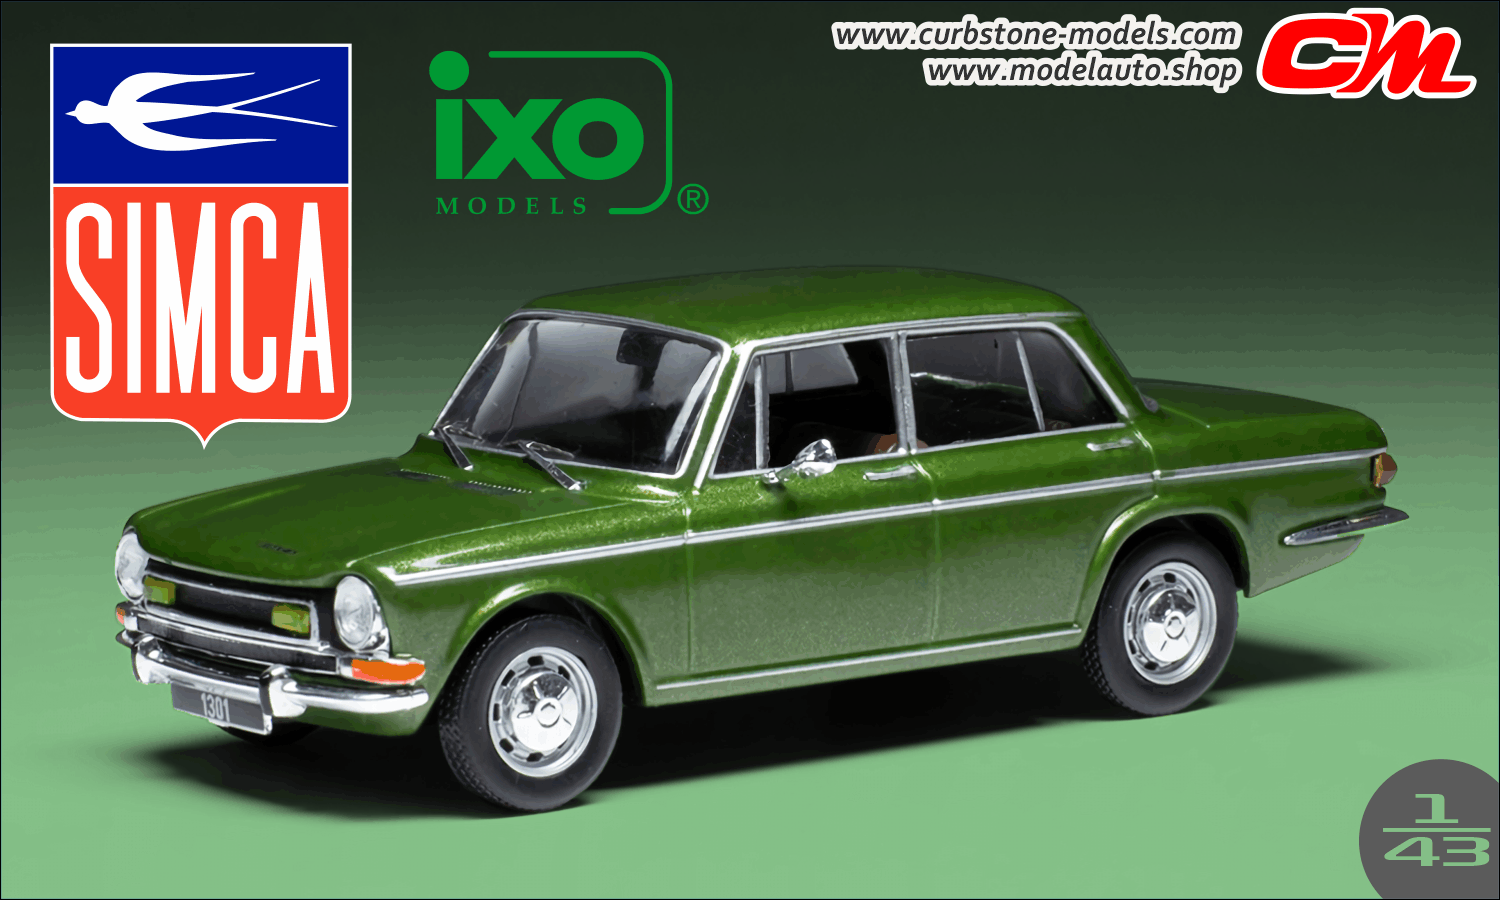 1972 Simca 1301 Special Metallic Green